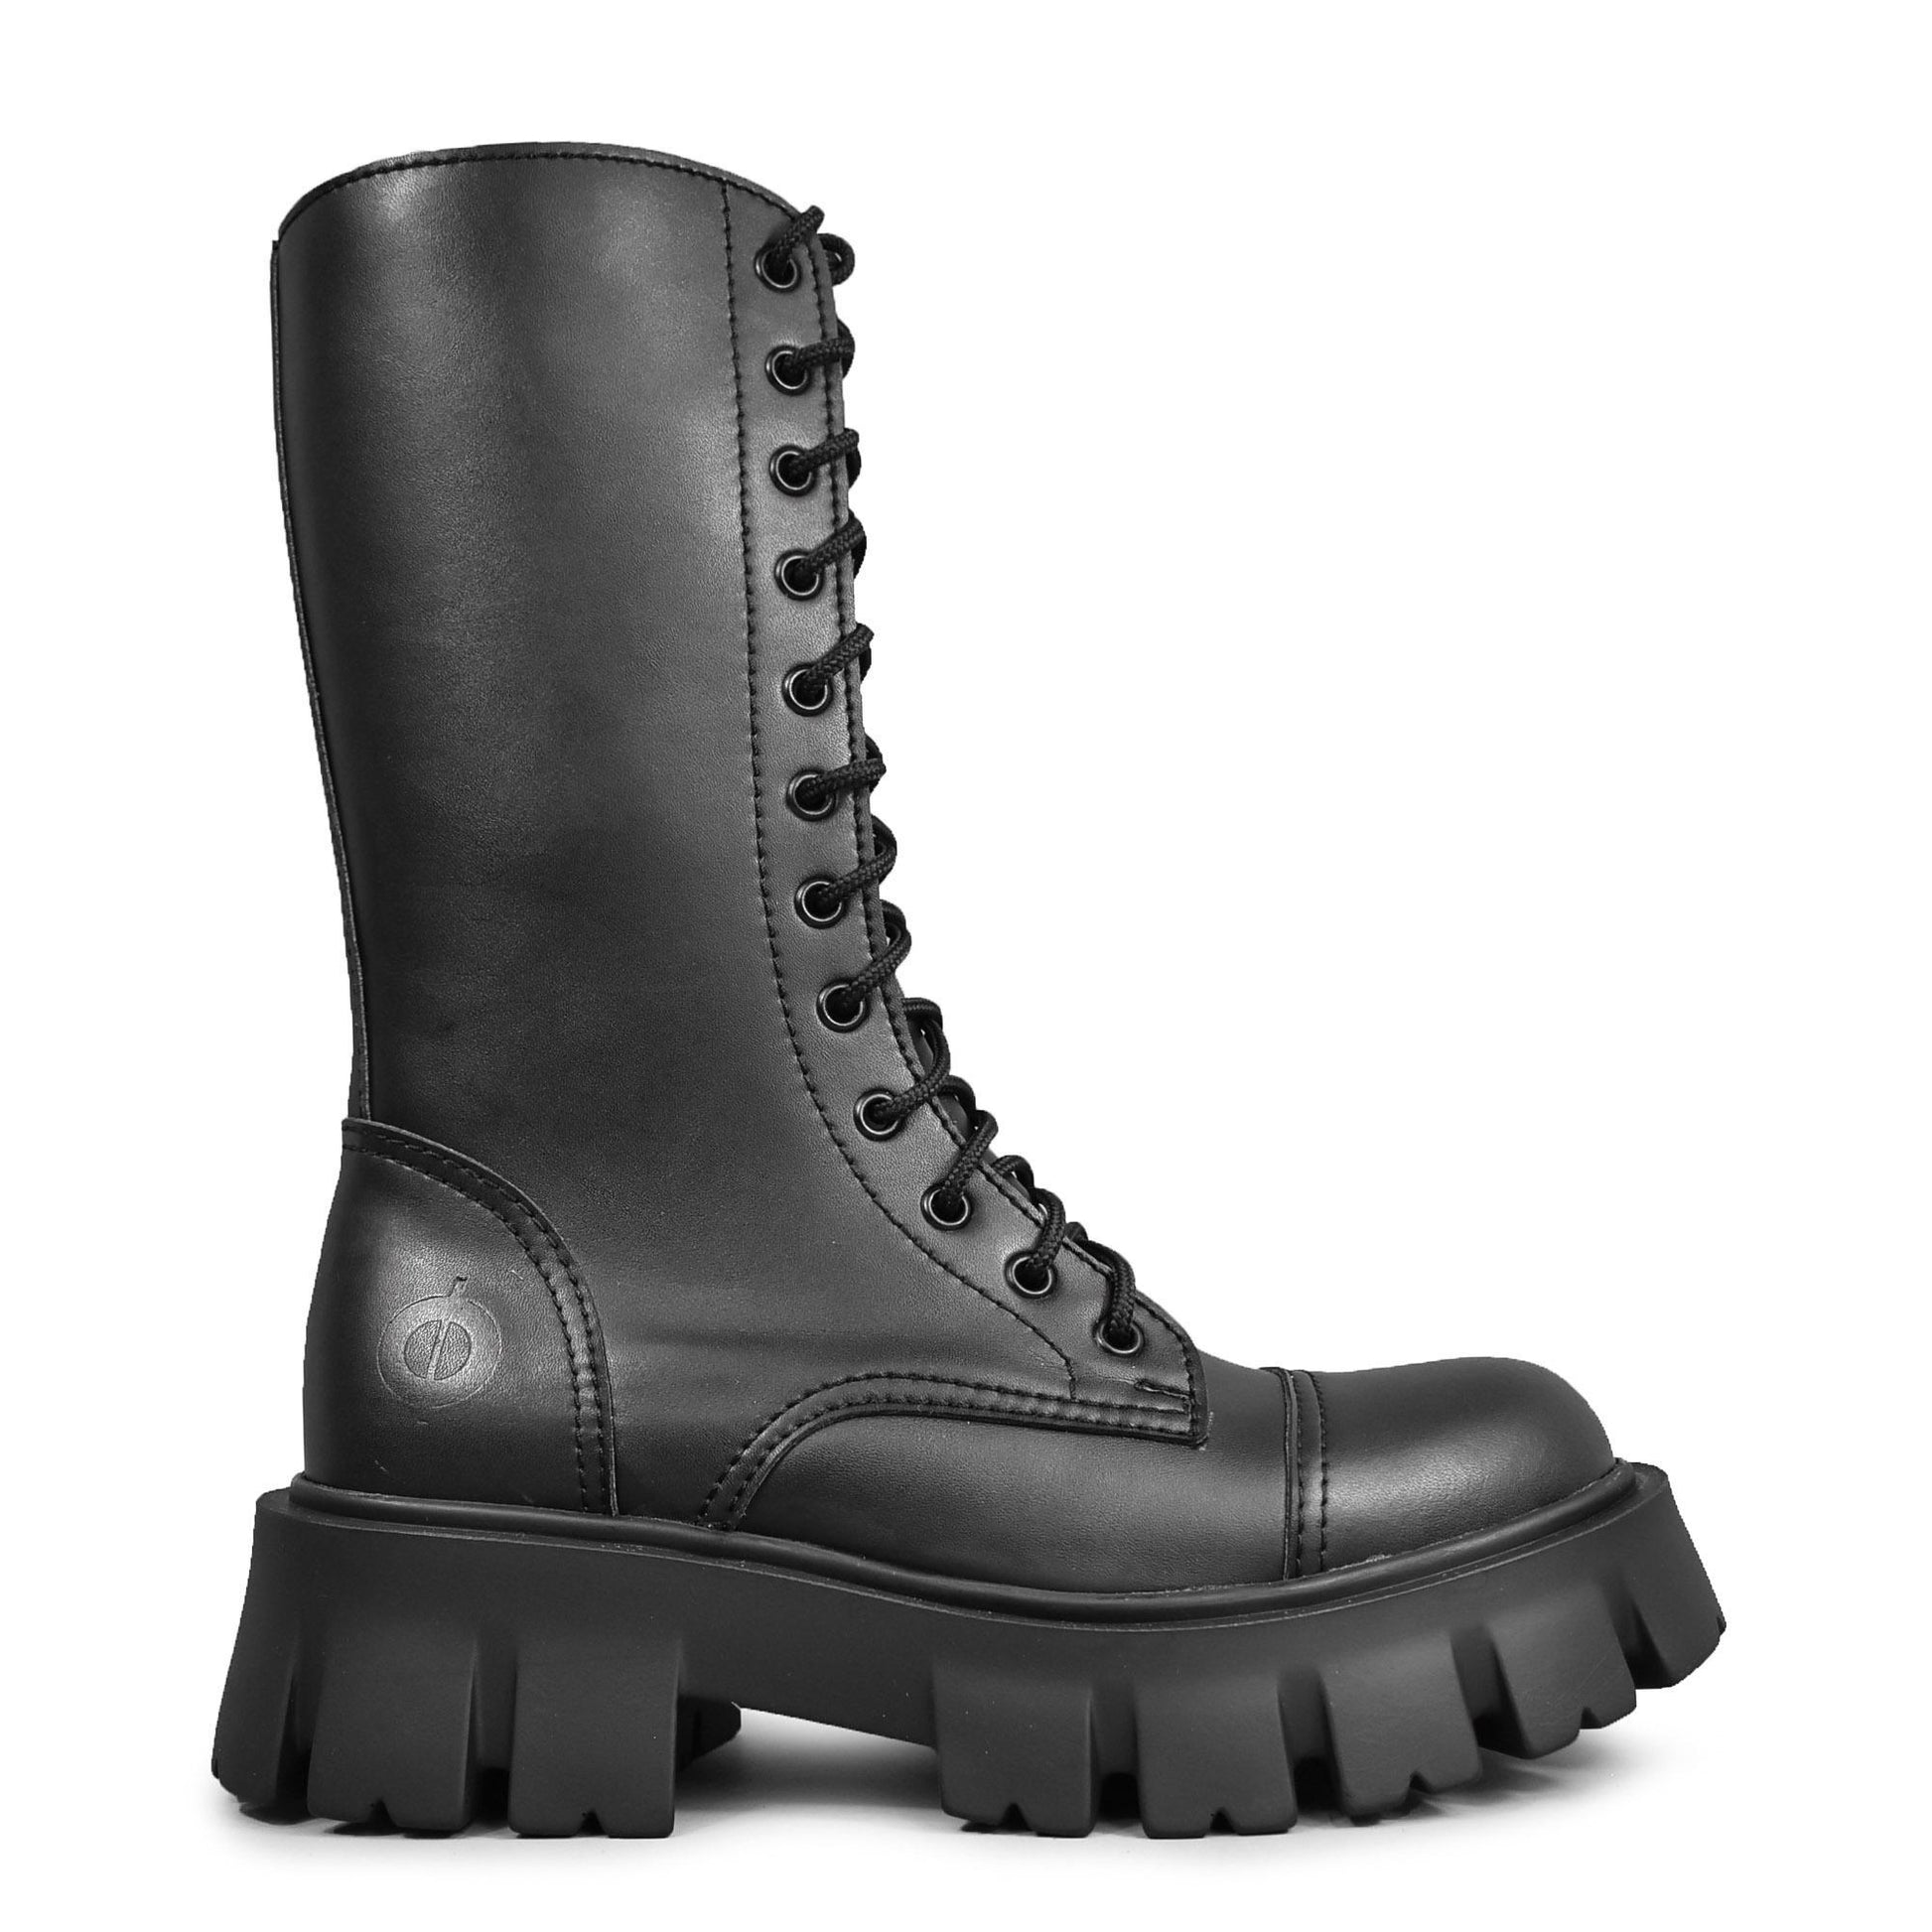 Seitenansicht: Schwarze 12 Loch-Stiefel aus Kunstleder ohne Reißverschluss